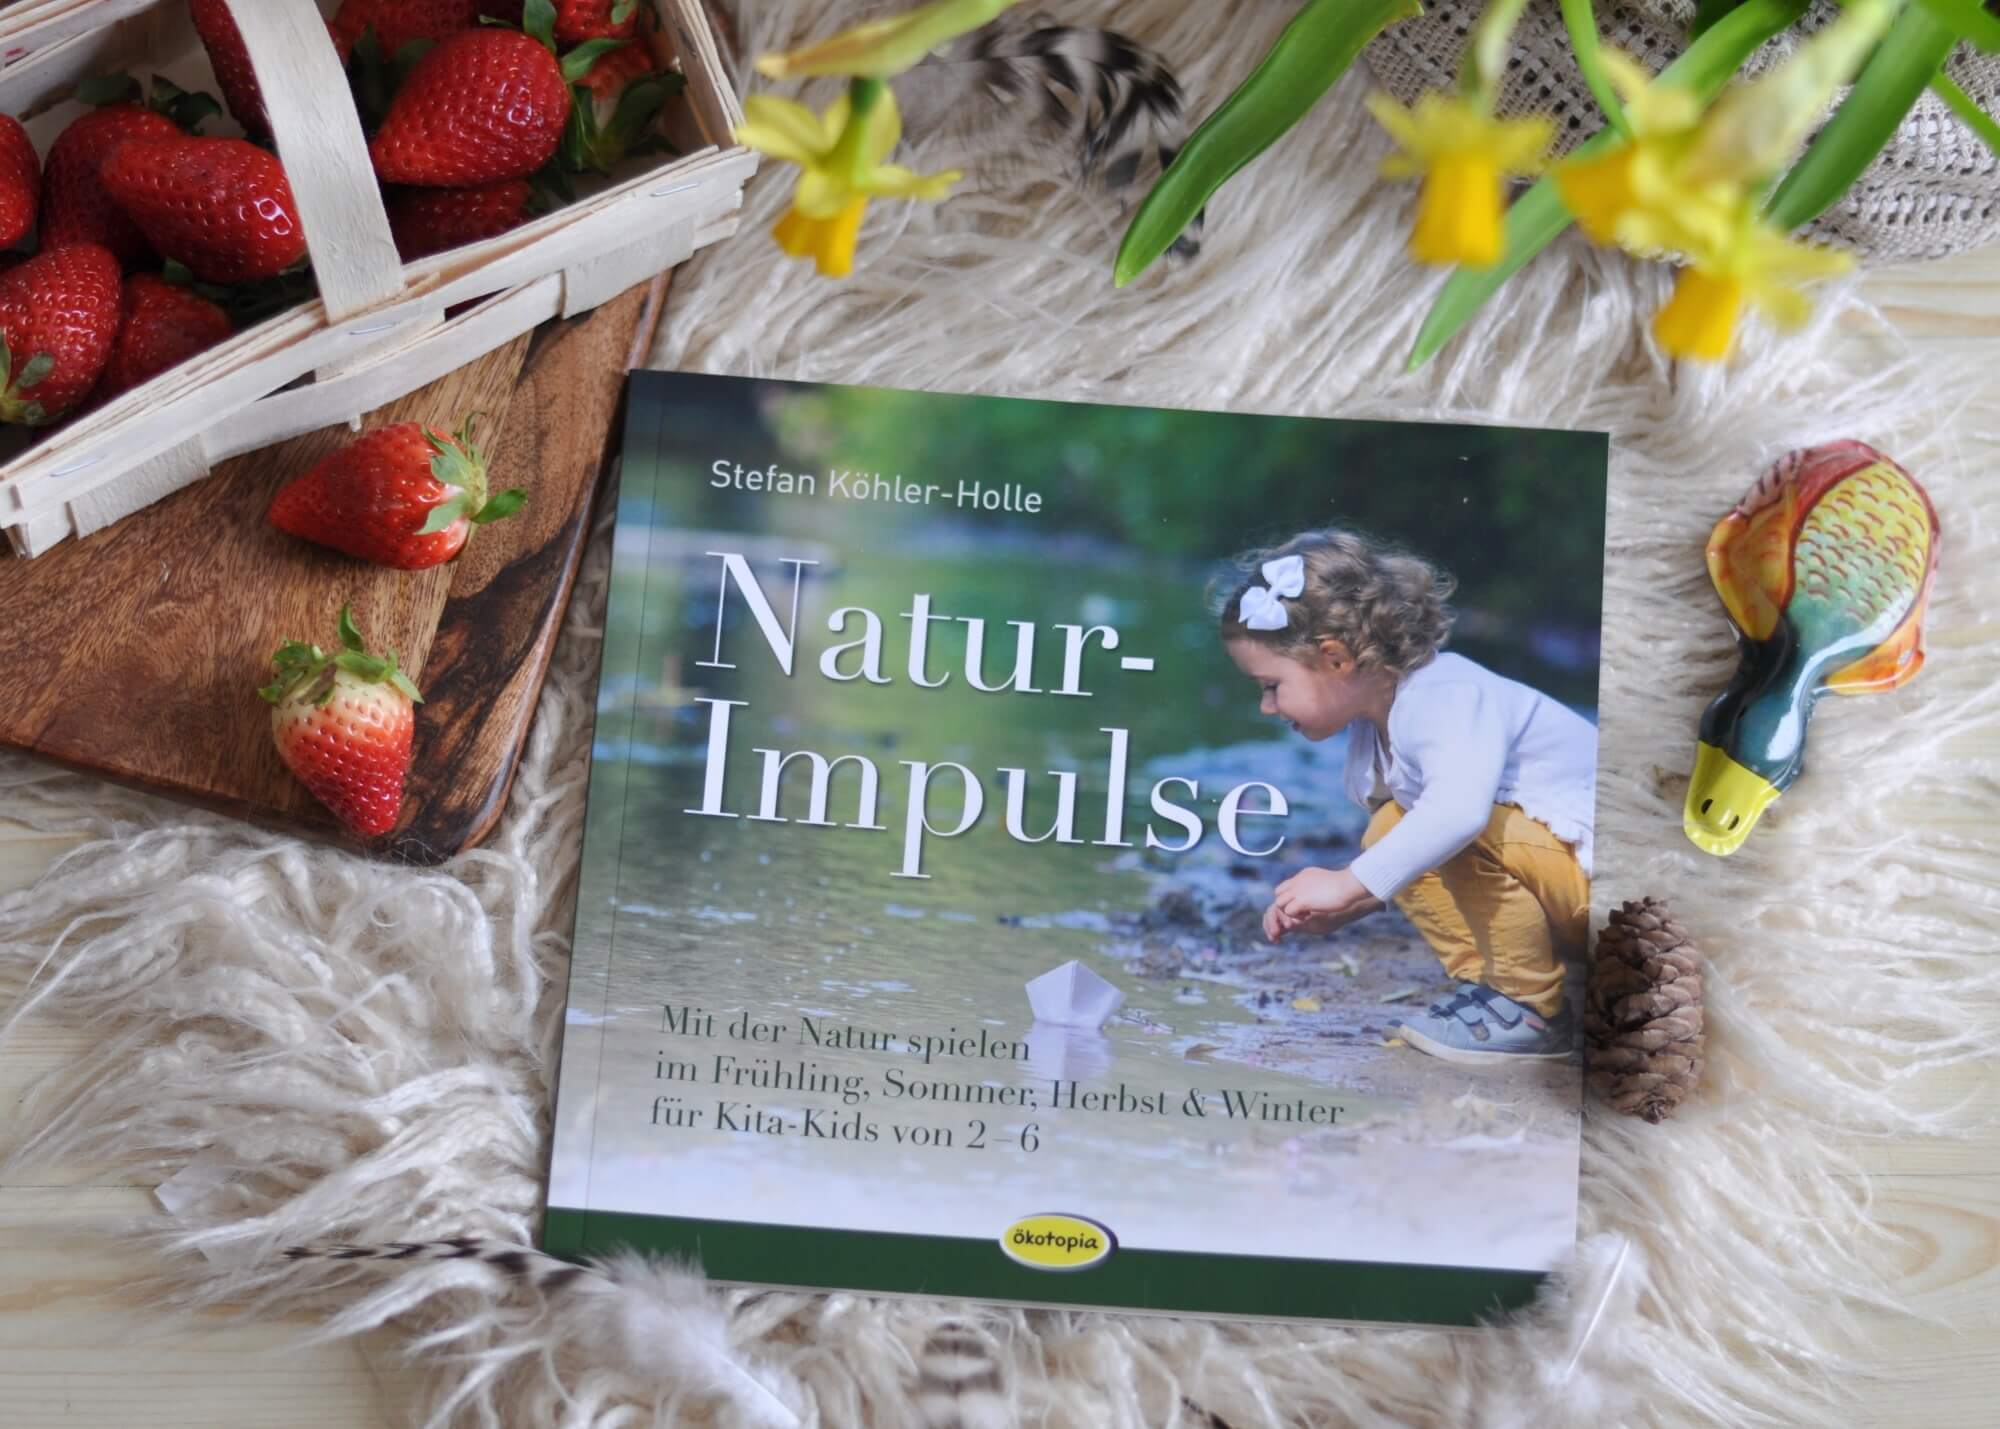 54 Ideen, um die Natur zu endecken, mit Naturmaterialien zu spielen und zu basteln. Dieses Buch inspiriert mit vielen Fotoaufnahmen und wenig Text, ideal für Eltern und Erzieher mit Kindern ab 2 Jahren. #natur #experimente #basteln #montessori #kindergarten #basteln #garten #kinder #spiele